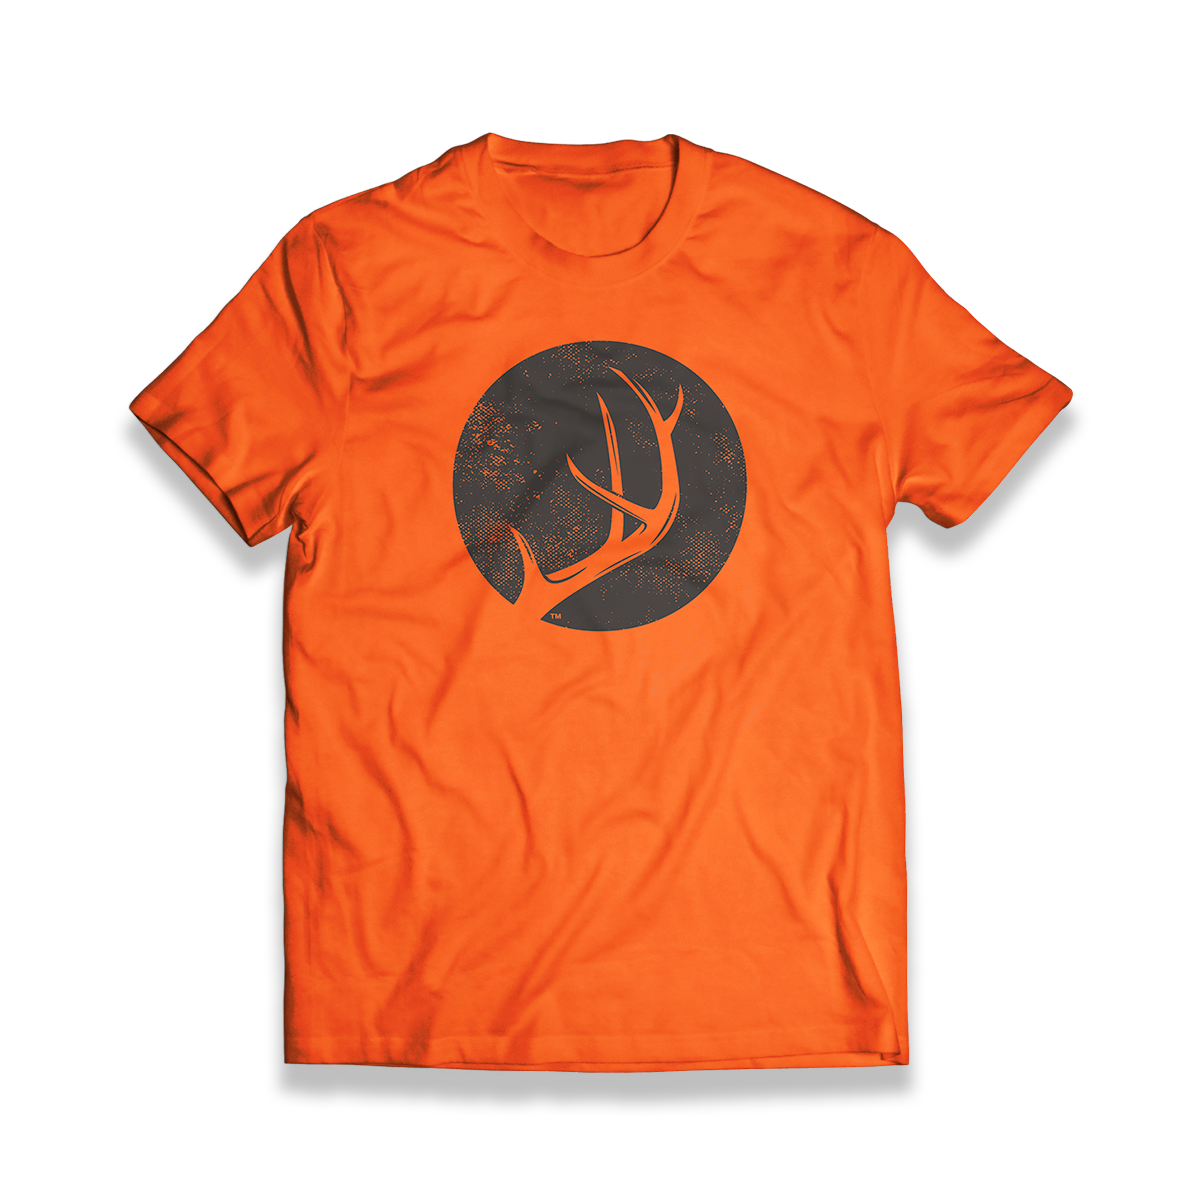 Blaze Orange Antler Shirt